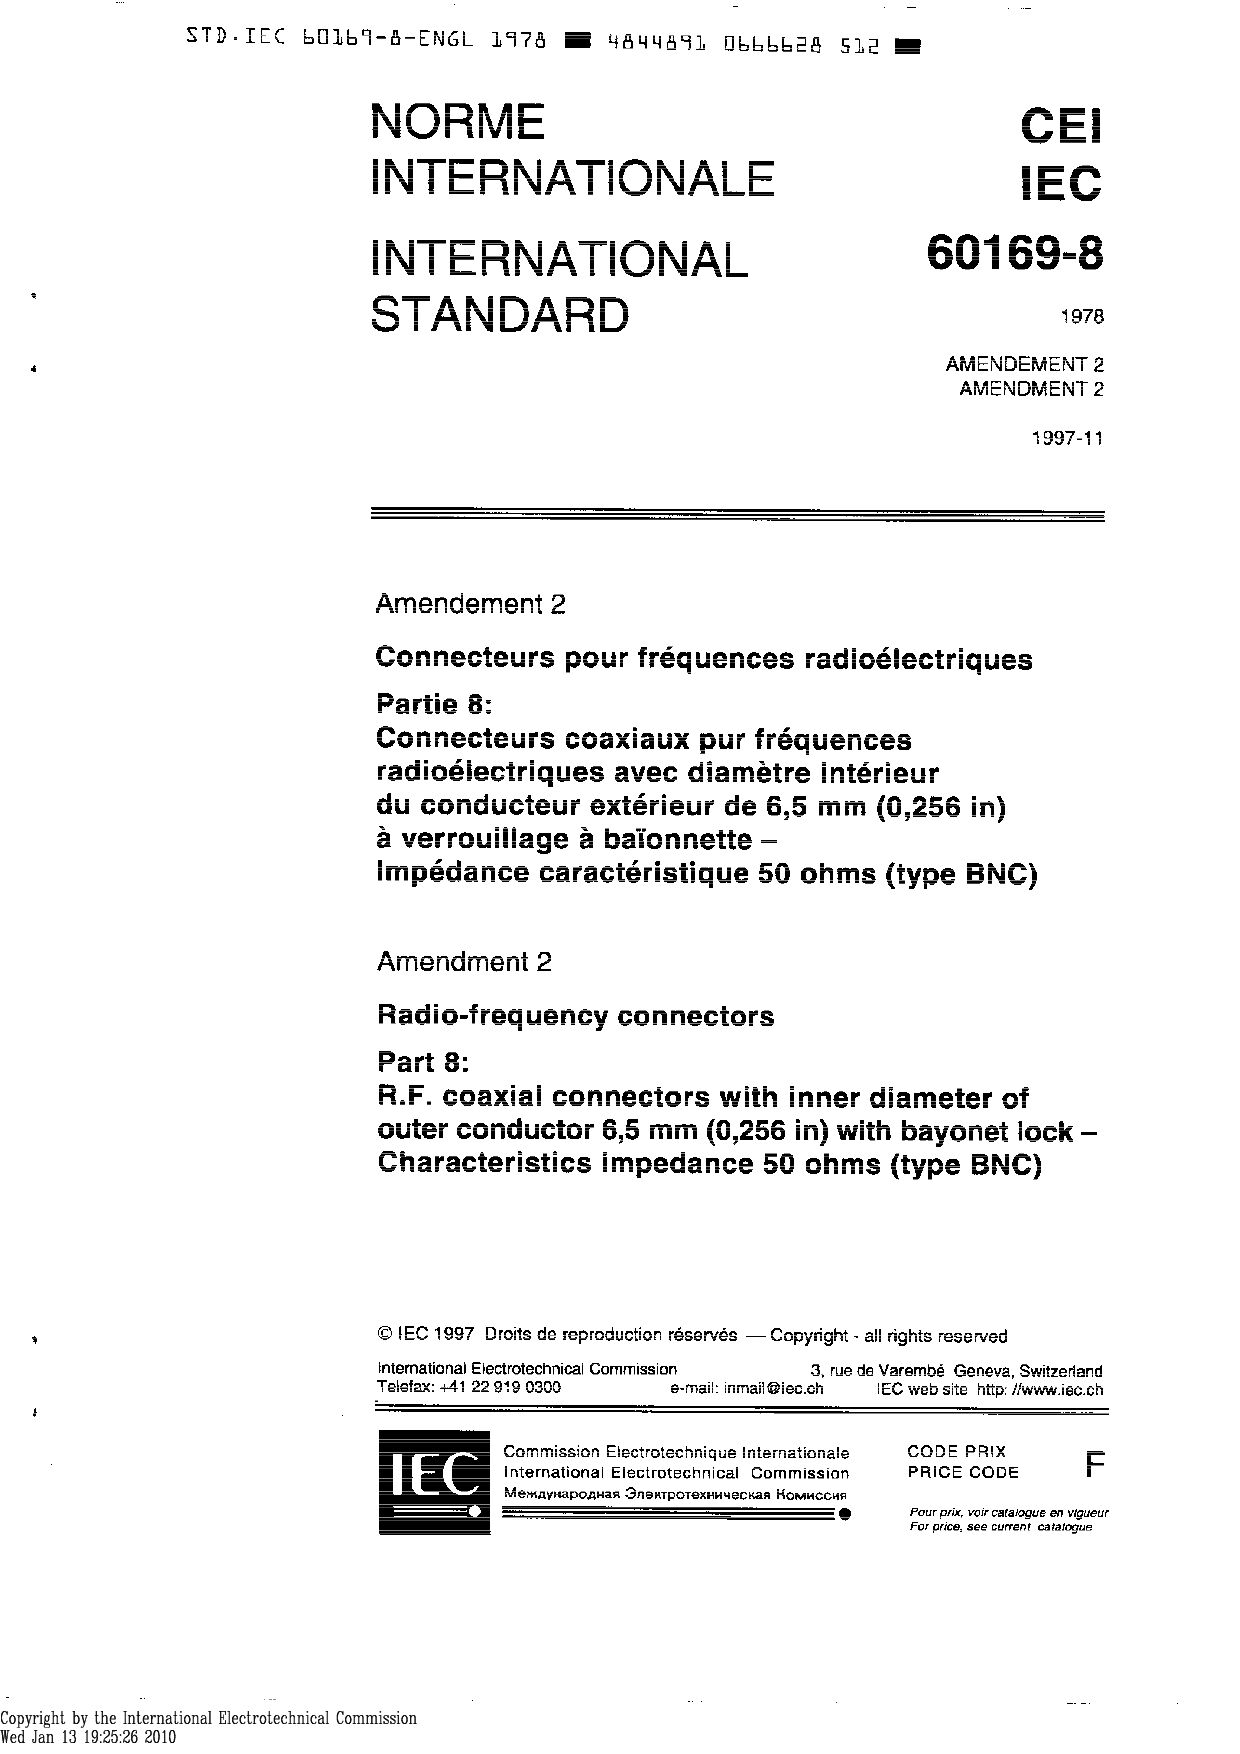 IEC 60169-8:1978/AMD2:1997